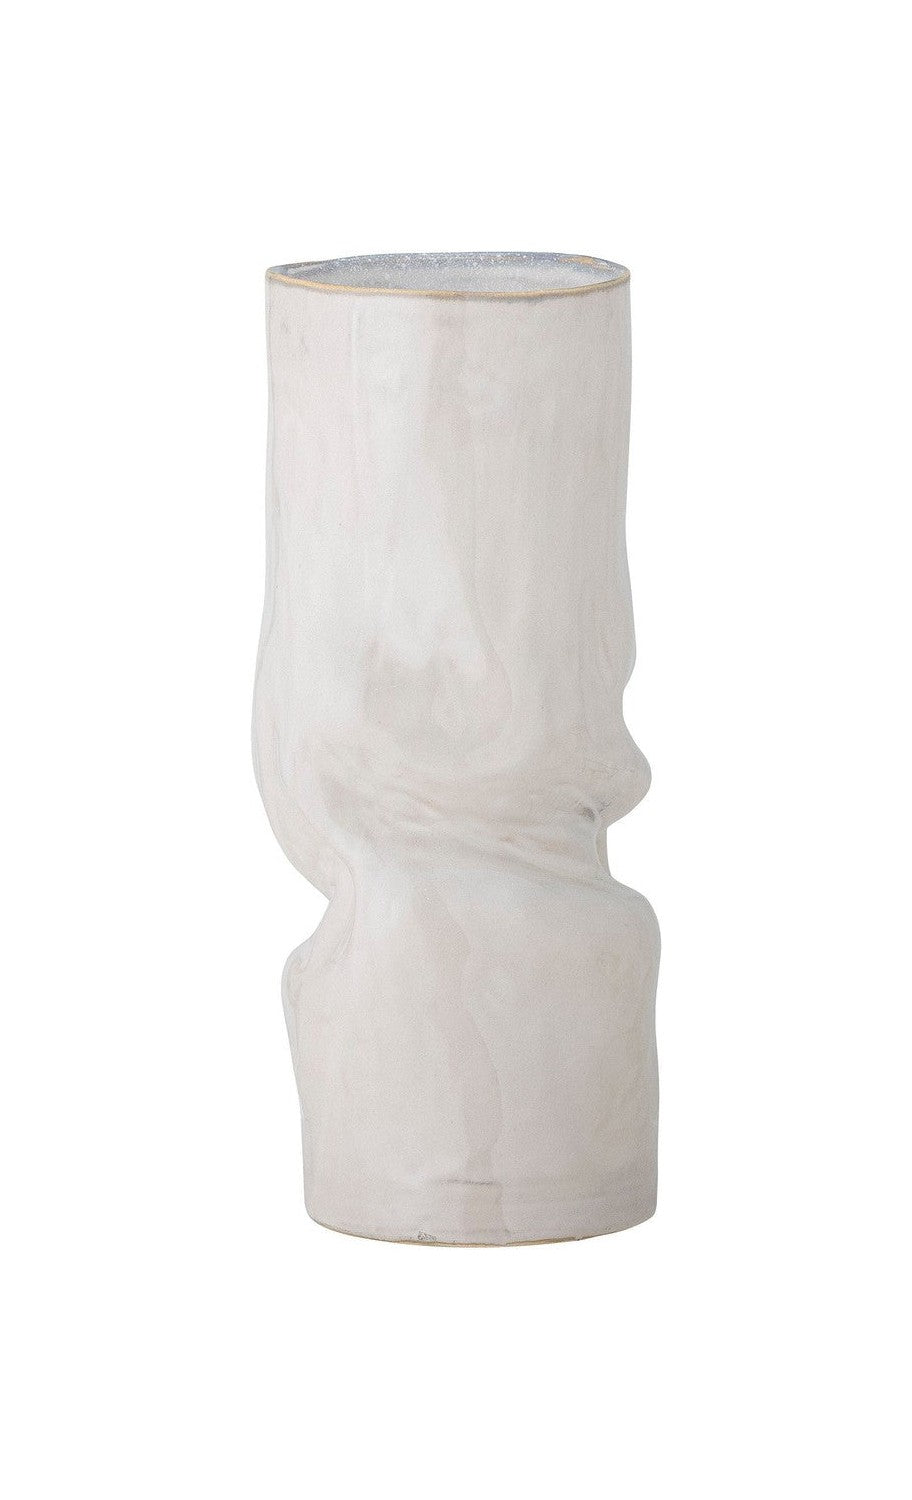 Bloomingville Araba Vase, weiß, Steinzeug